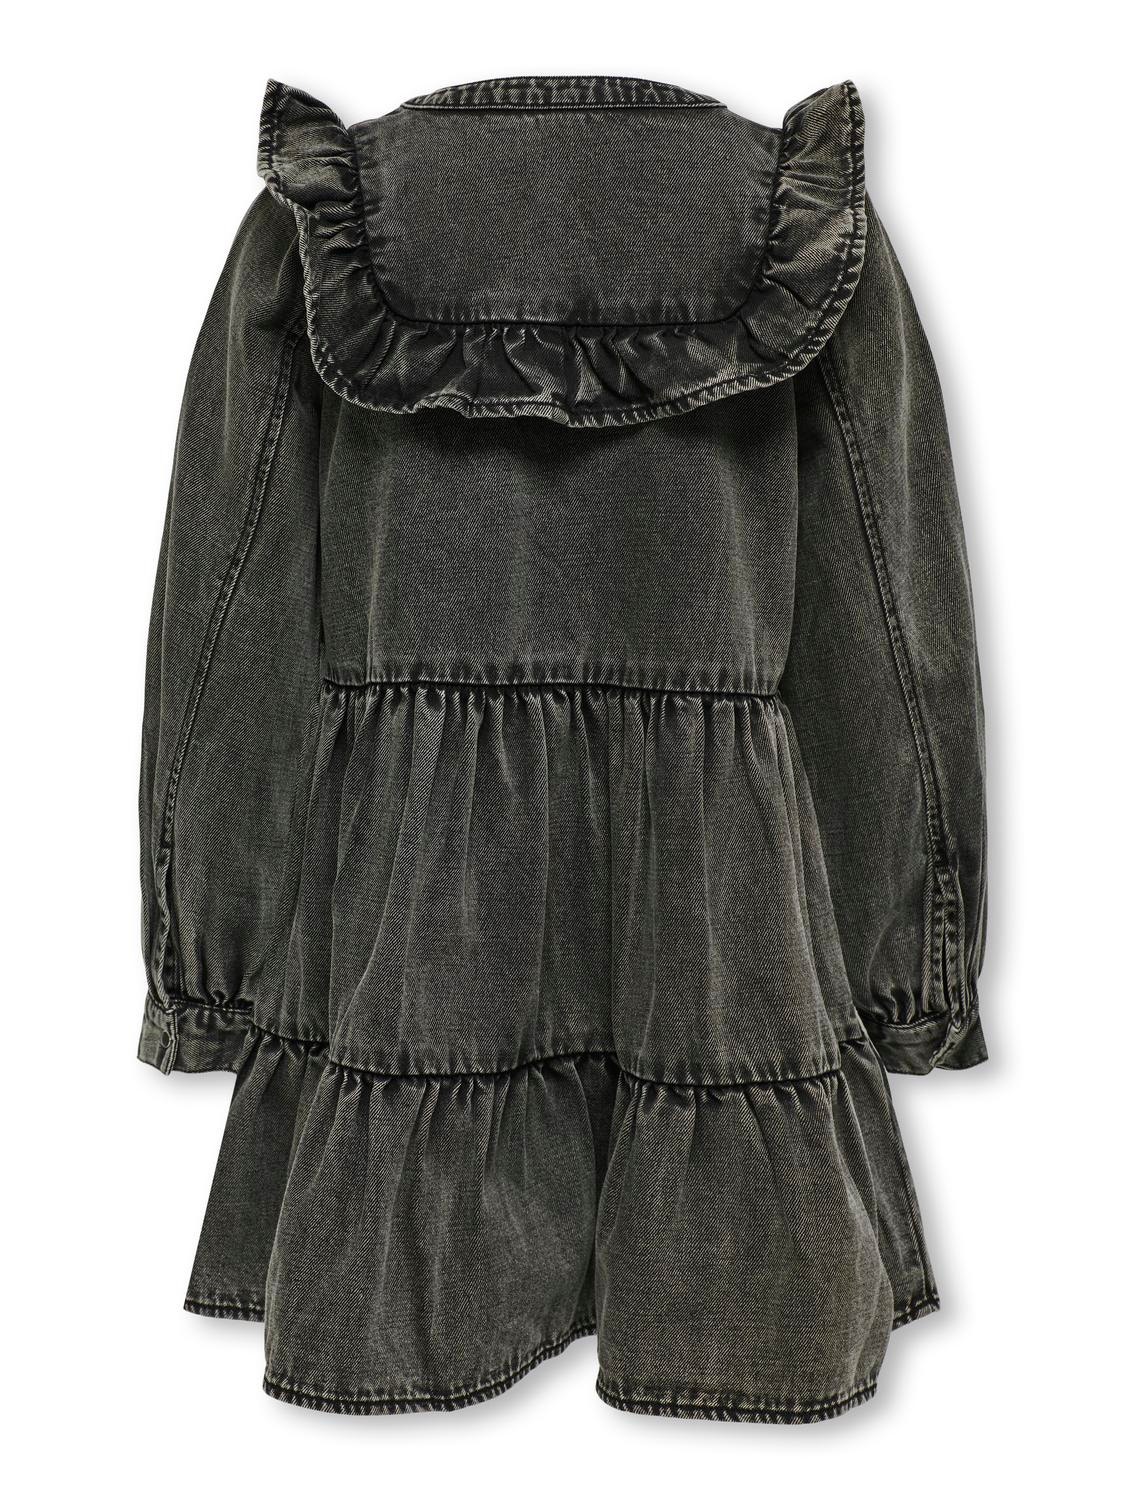 ONLY Enger Schnitt Rundhals Kurzes Kleid -Washed Black - 15308929